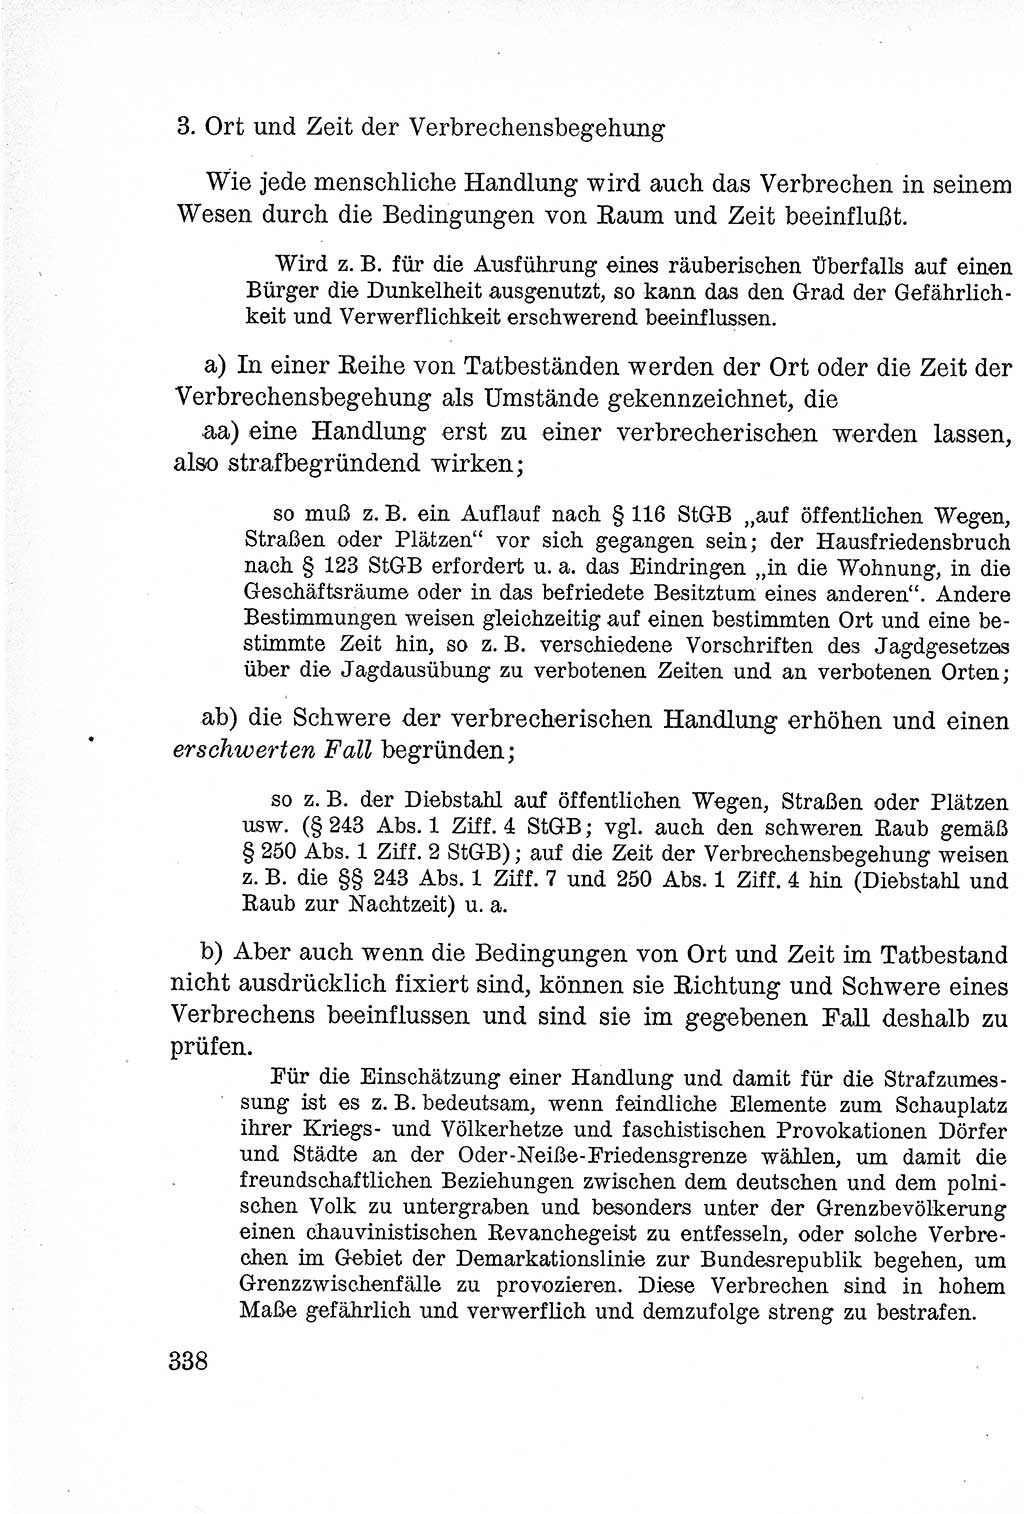 Lehrbuch des Strafrechts der Deutschen Demokratischen Republik (DDR), Allgemeiner Teil 1957, Seite 338 (Lb. Strafr. DDR AT 1957, S. 338)